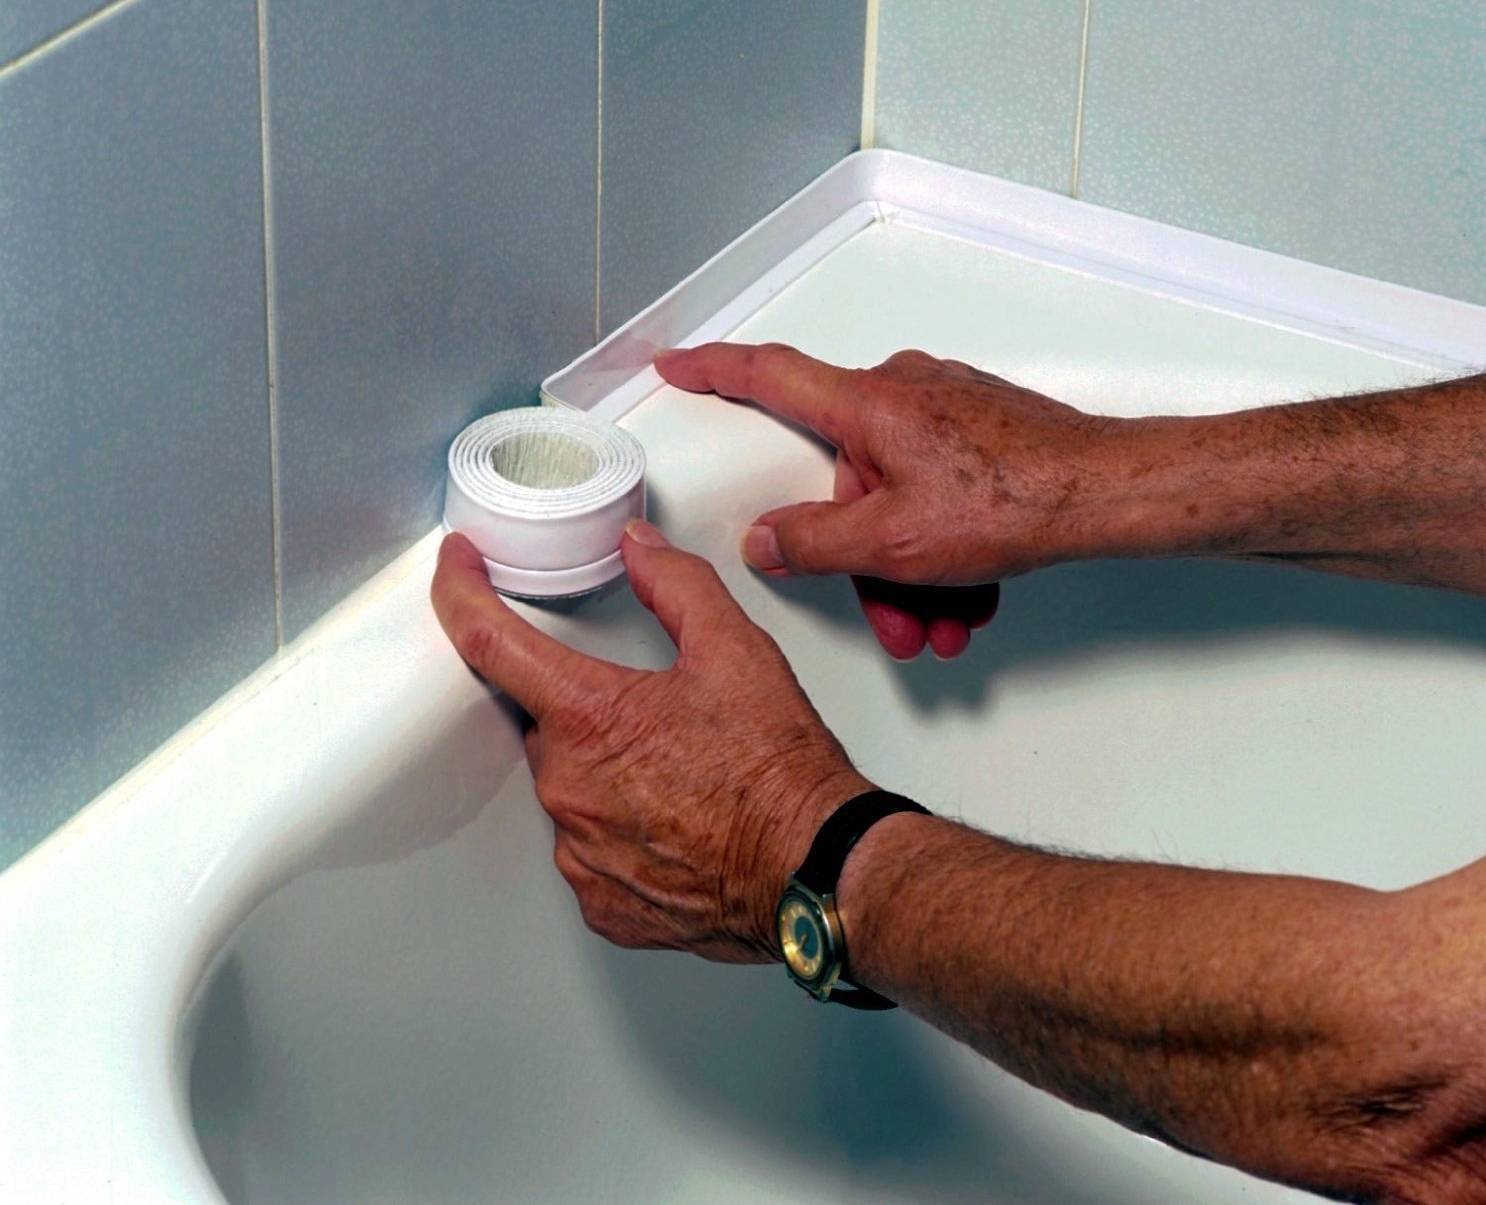 Герметизация ванны со стеной — чем и как заделать стык между ванной и стеной (фото, видео)